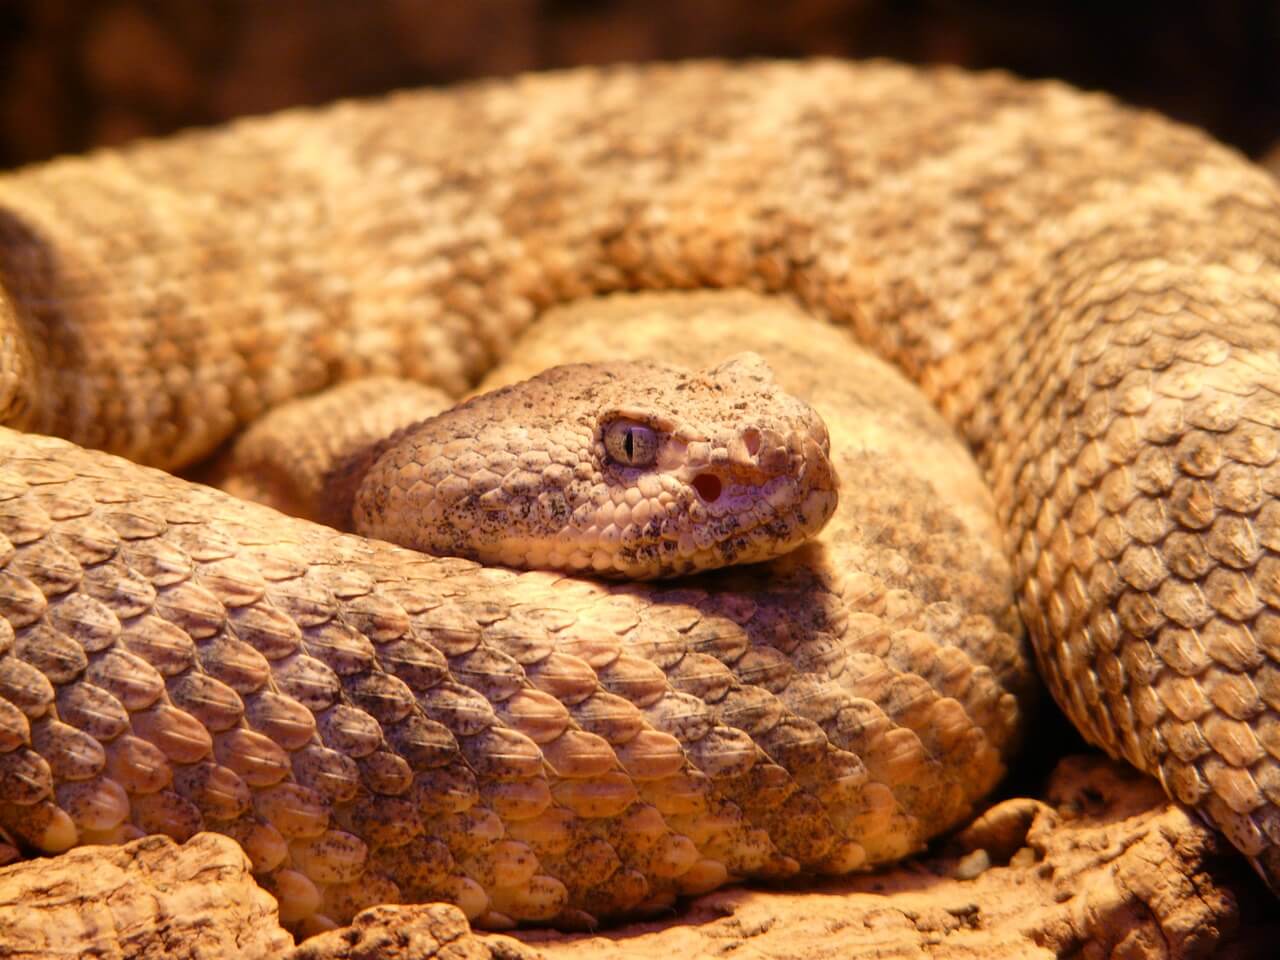 https://pixabay.com/en/spotted-rattlesnake-snake-54002/